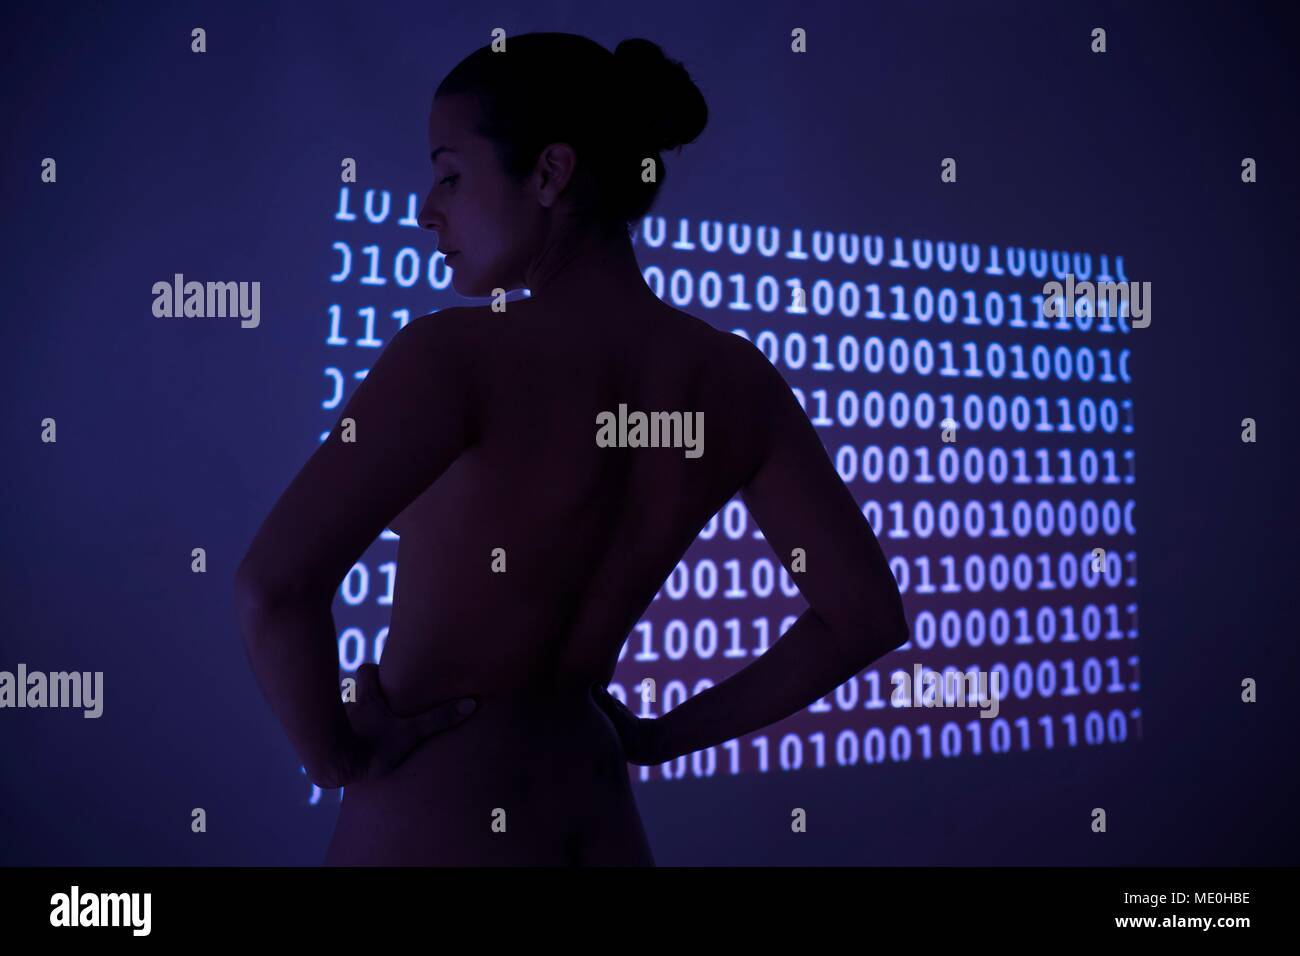 Femme avec un code binaire. Banque D'Images